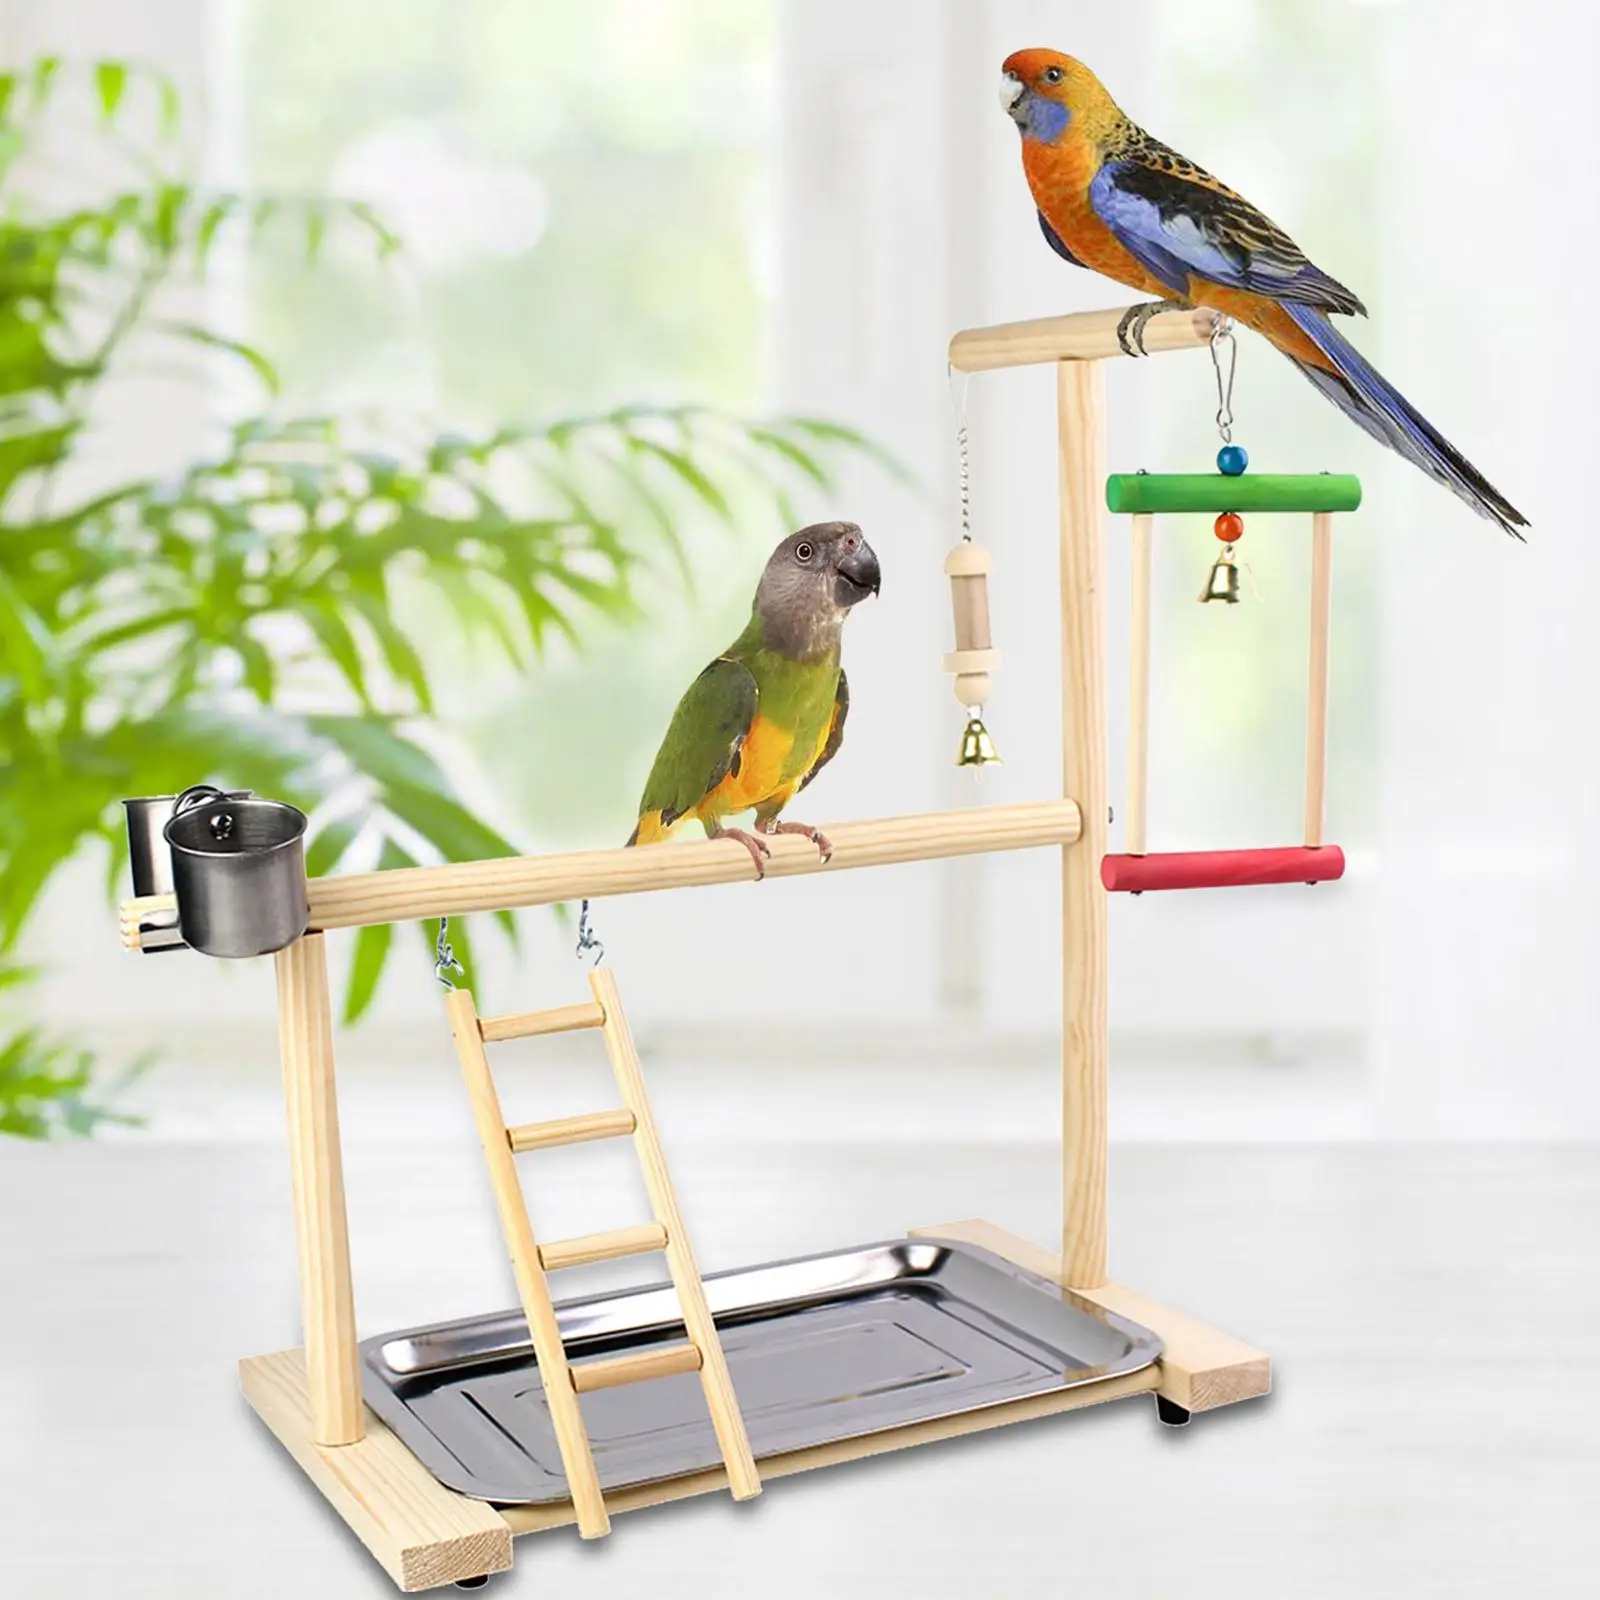 Toys Bird Perch Platform Bird Playground with Feeder Gym Ladder Playground